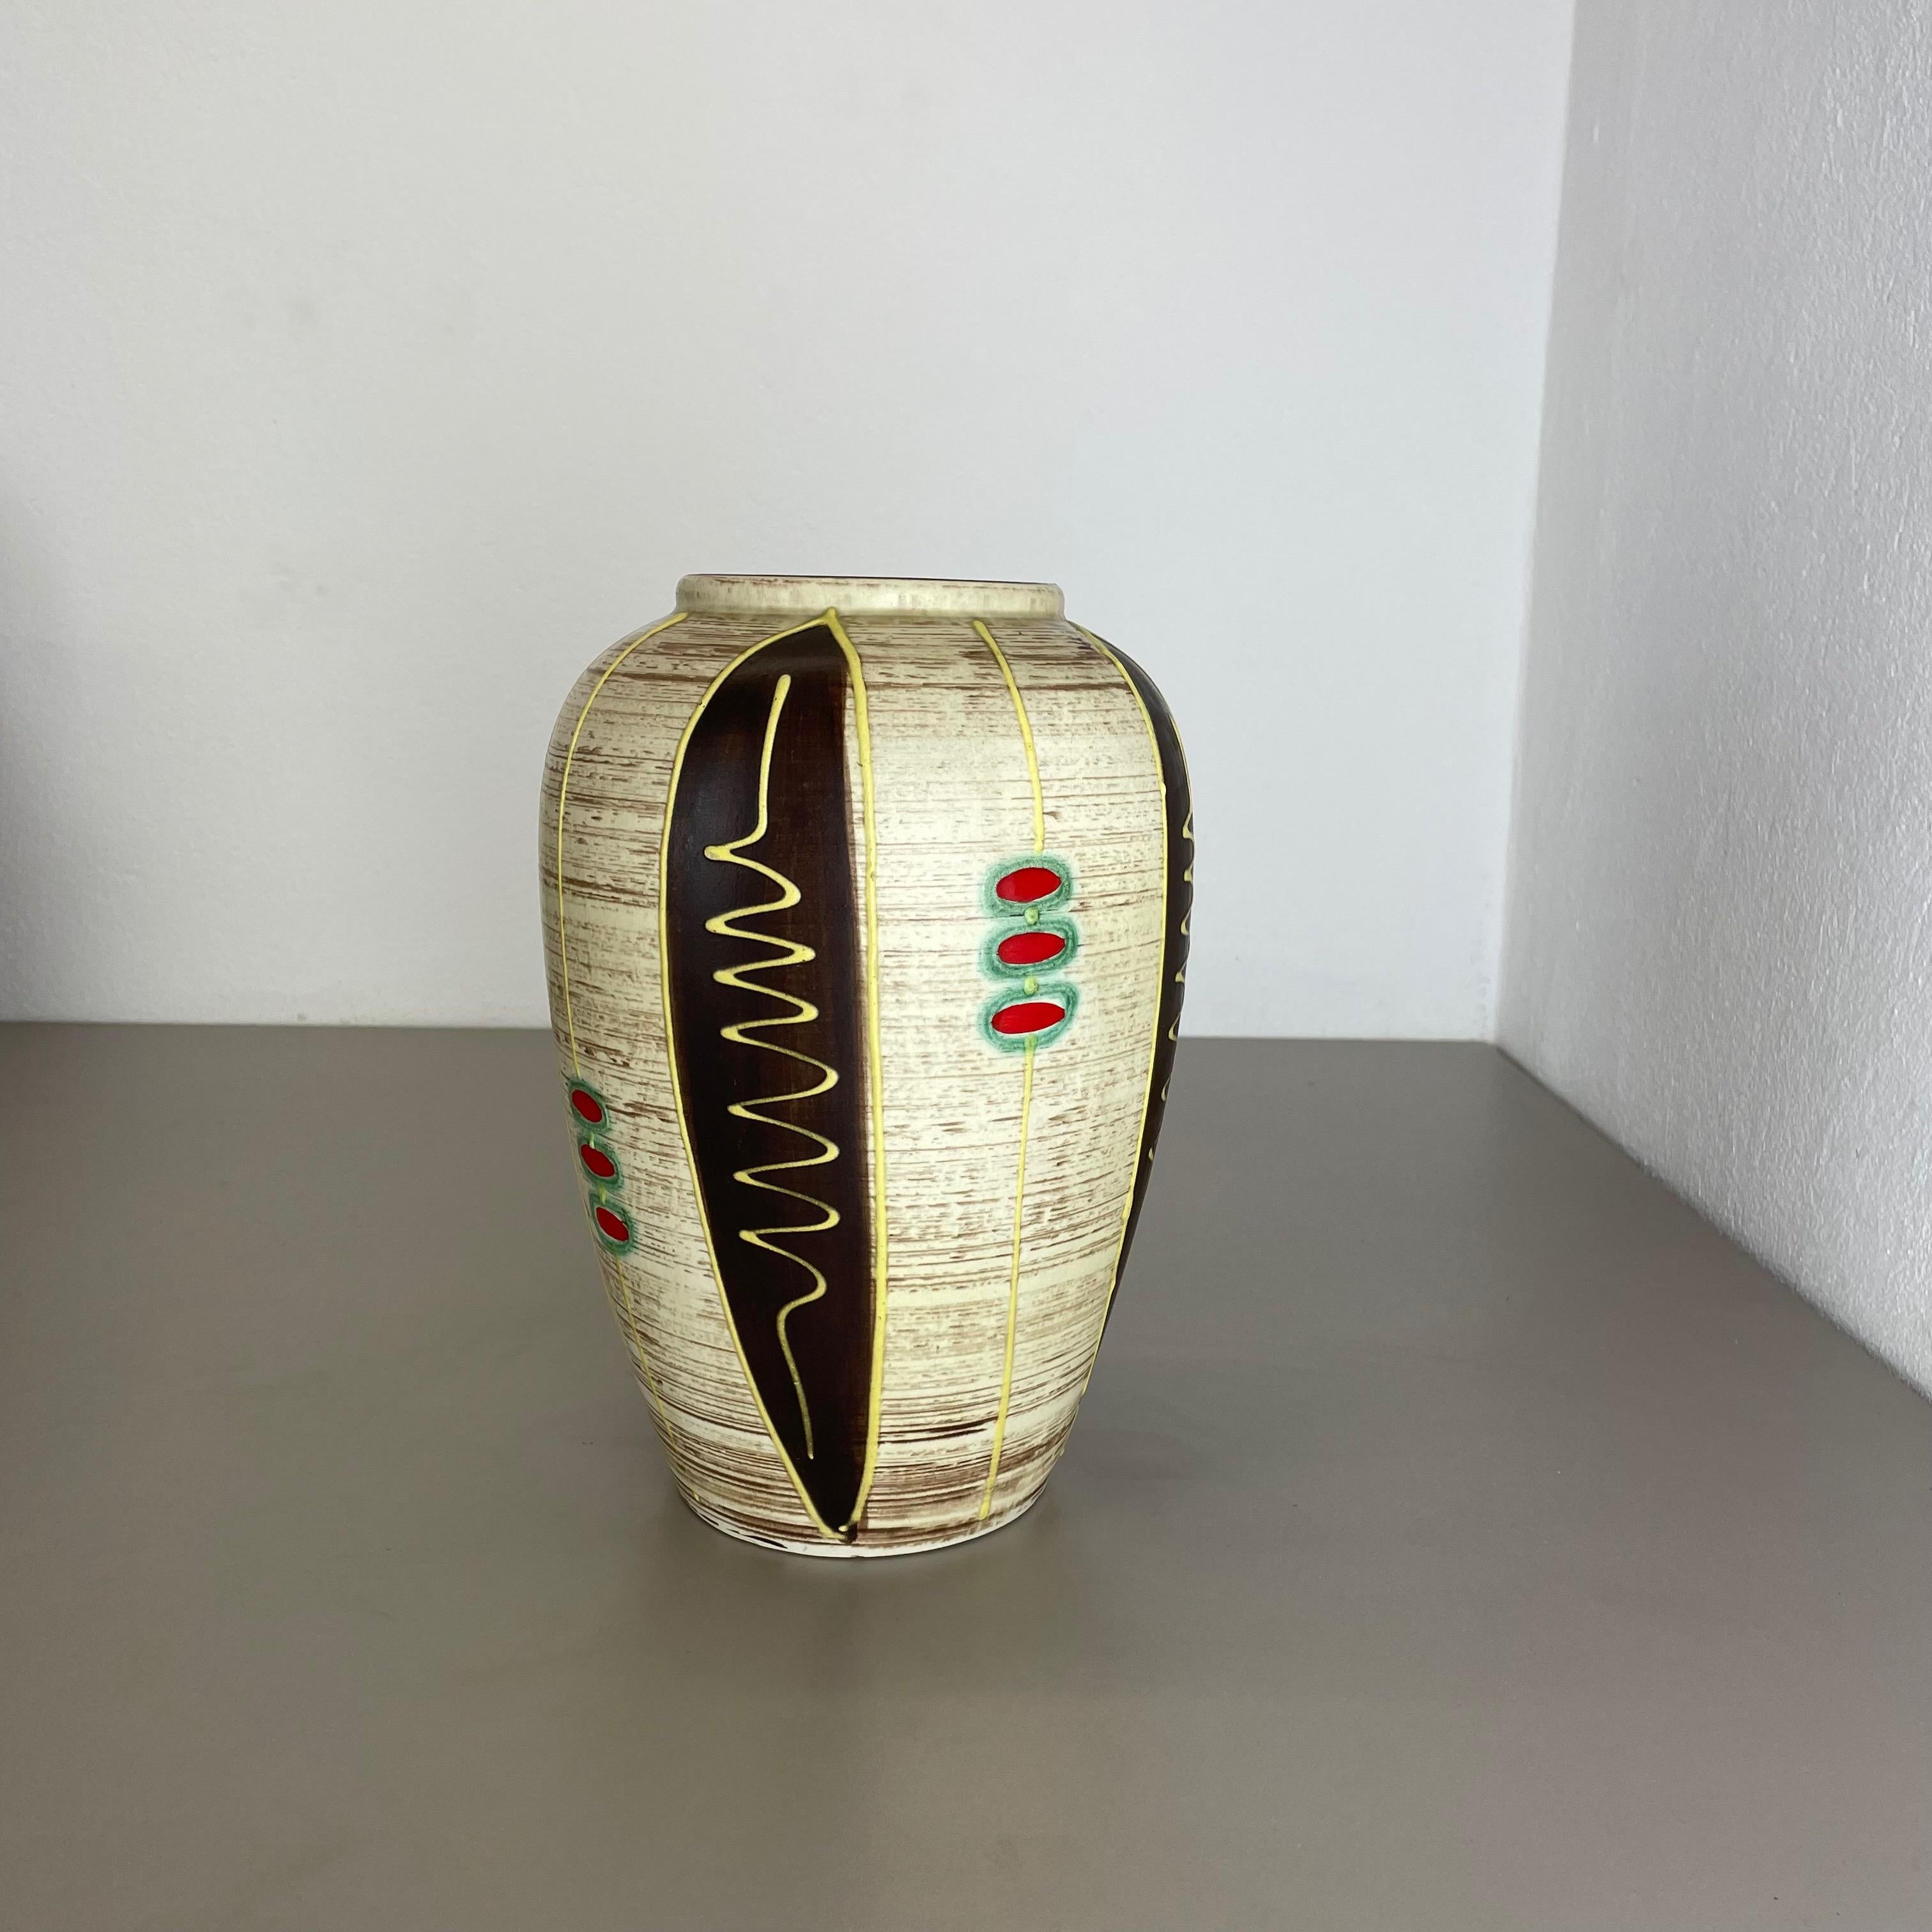 Article :

Vase en céramique


Producteur :

JASBA Ceramic, Allemagne



Décennie :

1970s




Vase original en céramique des années 1950, fabriqué en Allemagne. Production allemande de haute qualité avec une belle illustration abstraite avec des